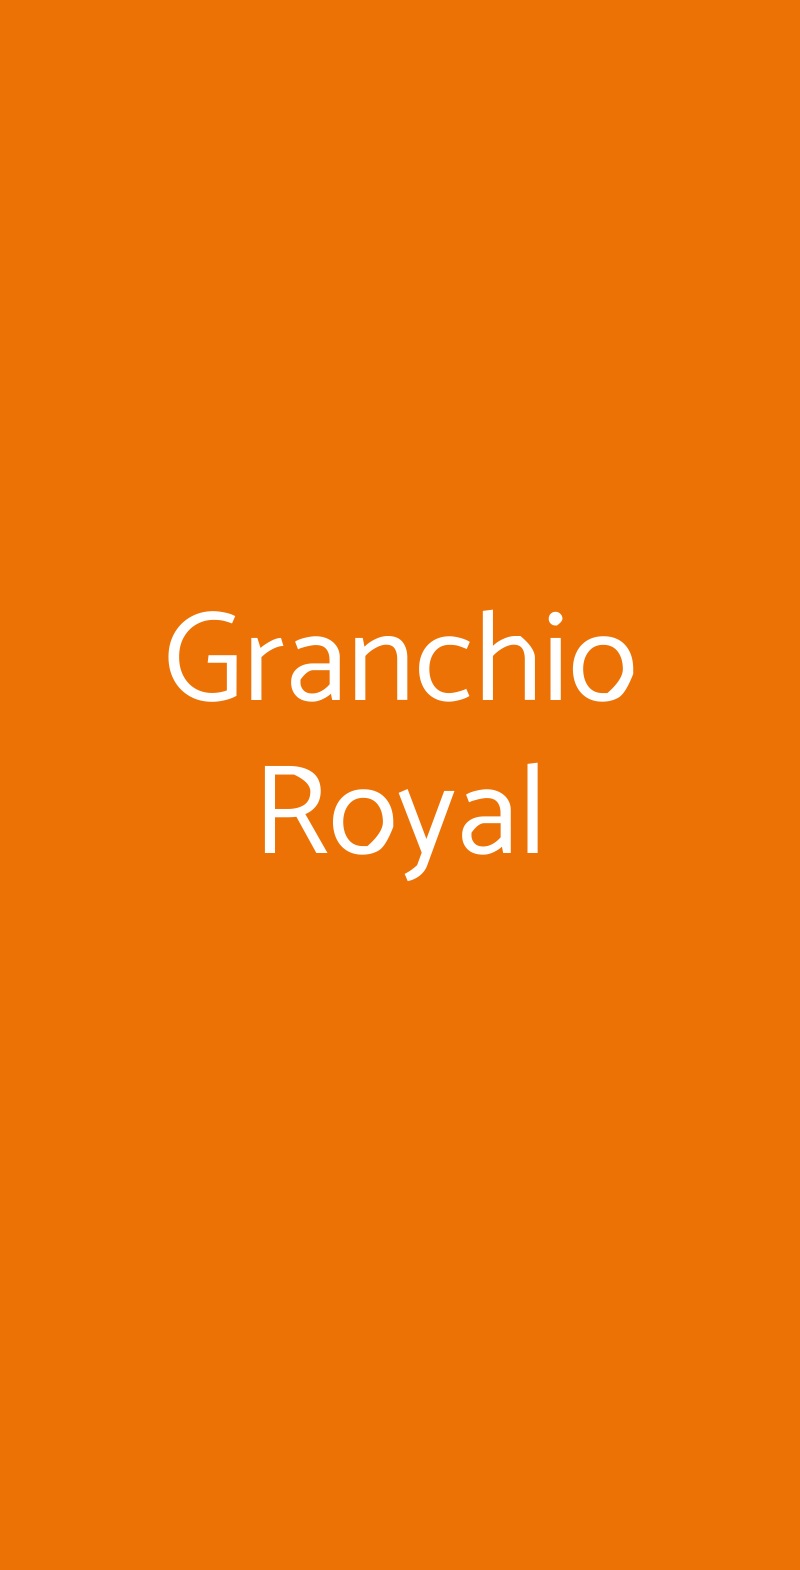 Granchio Royal Pescara menù 1 pagina